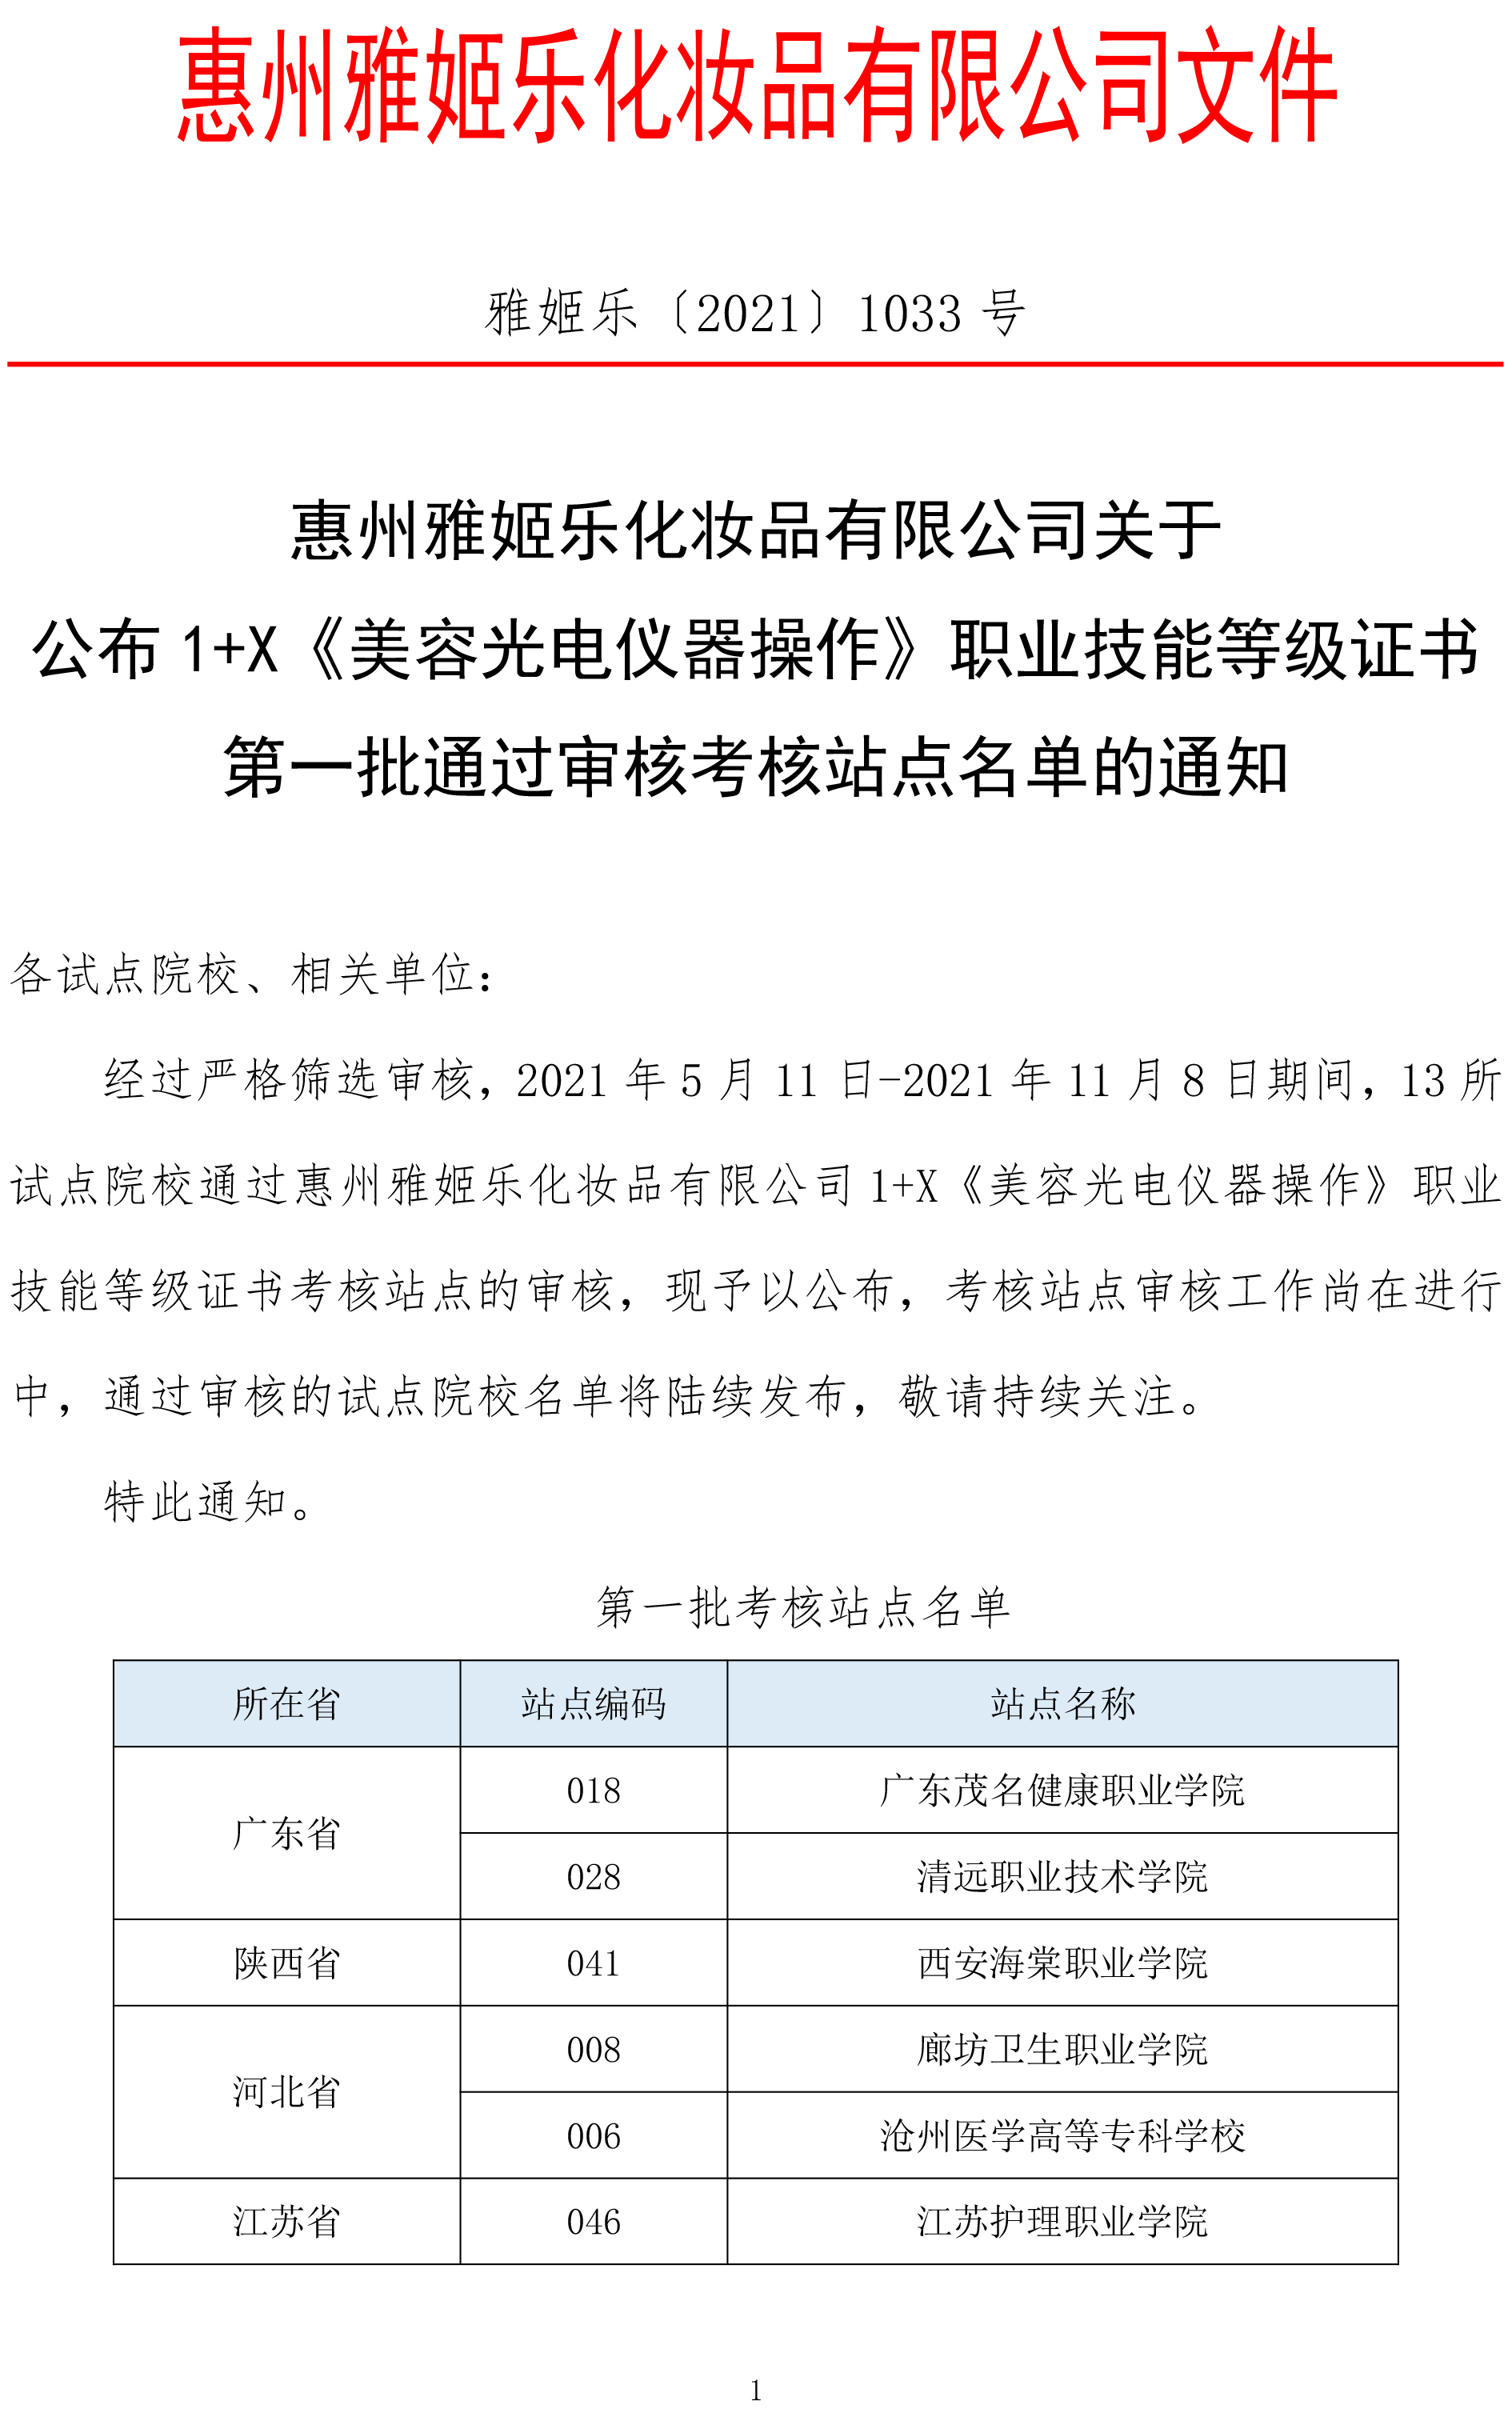 惠州雅姬乐化妆品有限公司关于 公布 1+X《美容光电仪器操作》职业技能等级证书 第一批通过审核考核站点名单的通知